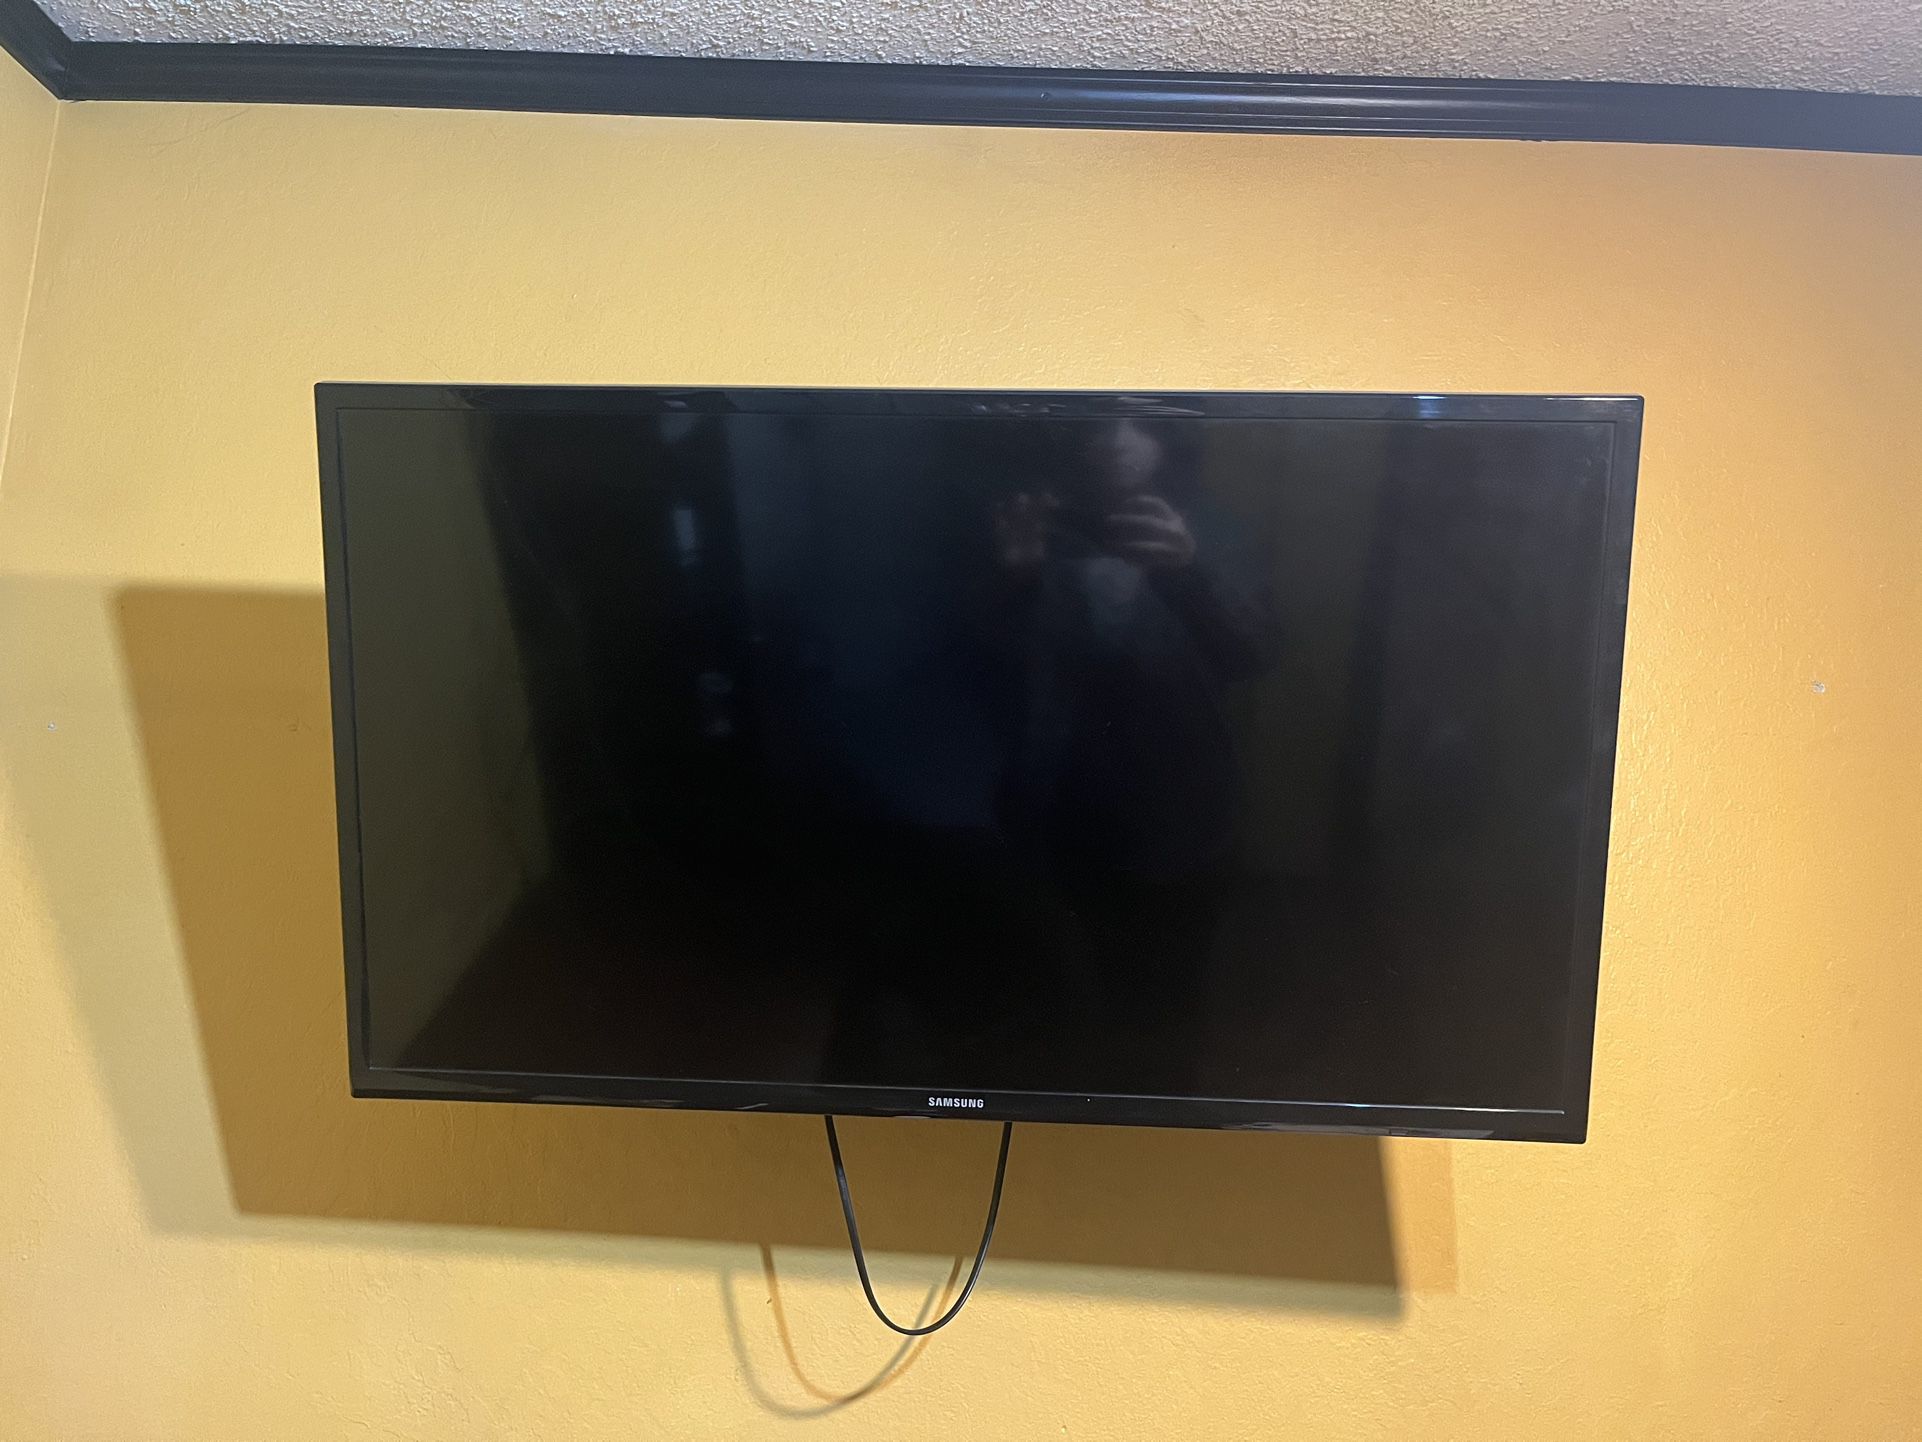 Samsung Tv 32” OBO